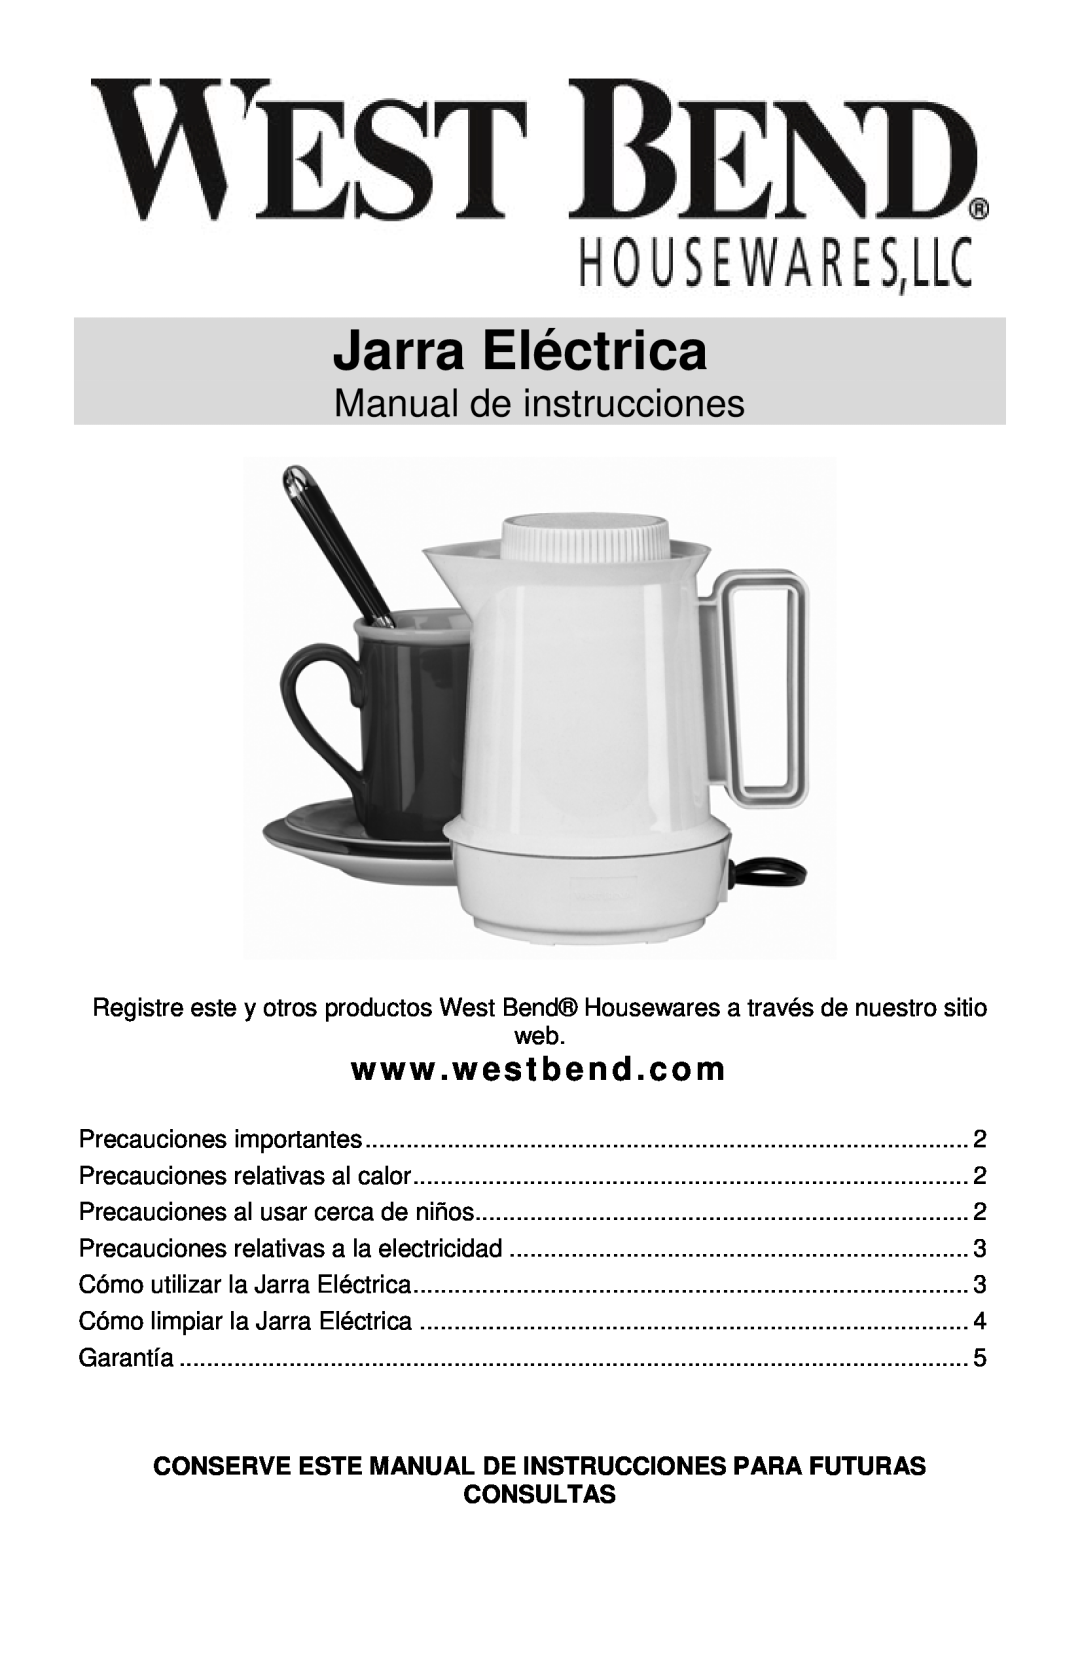 West Bend Electric Hot Pot instruction manual Jarra Eléctrica, Manual de instrucciones, www . westbend . com 